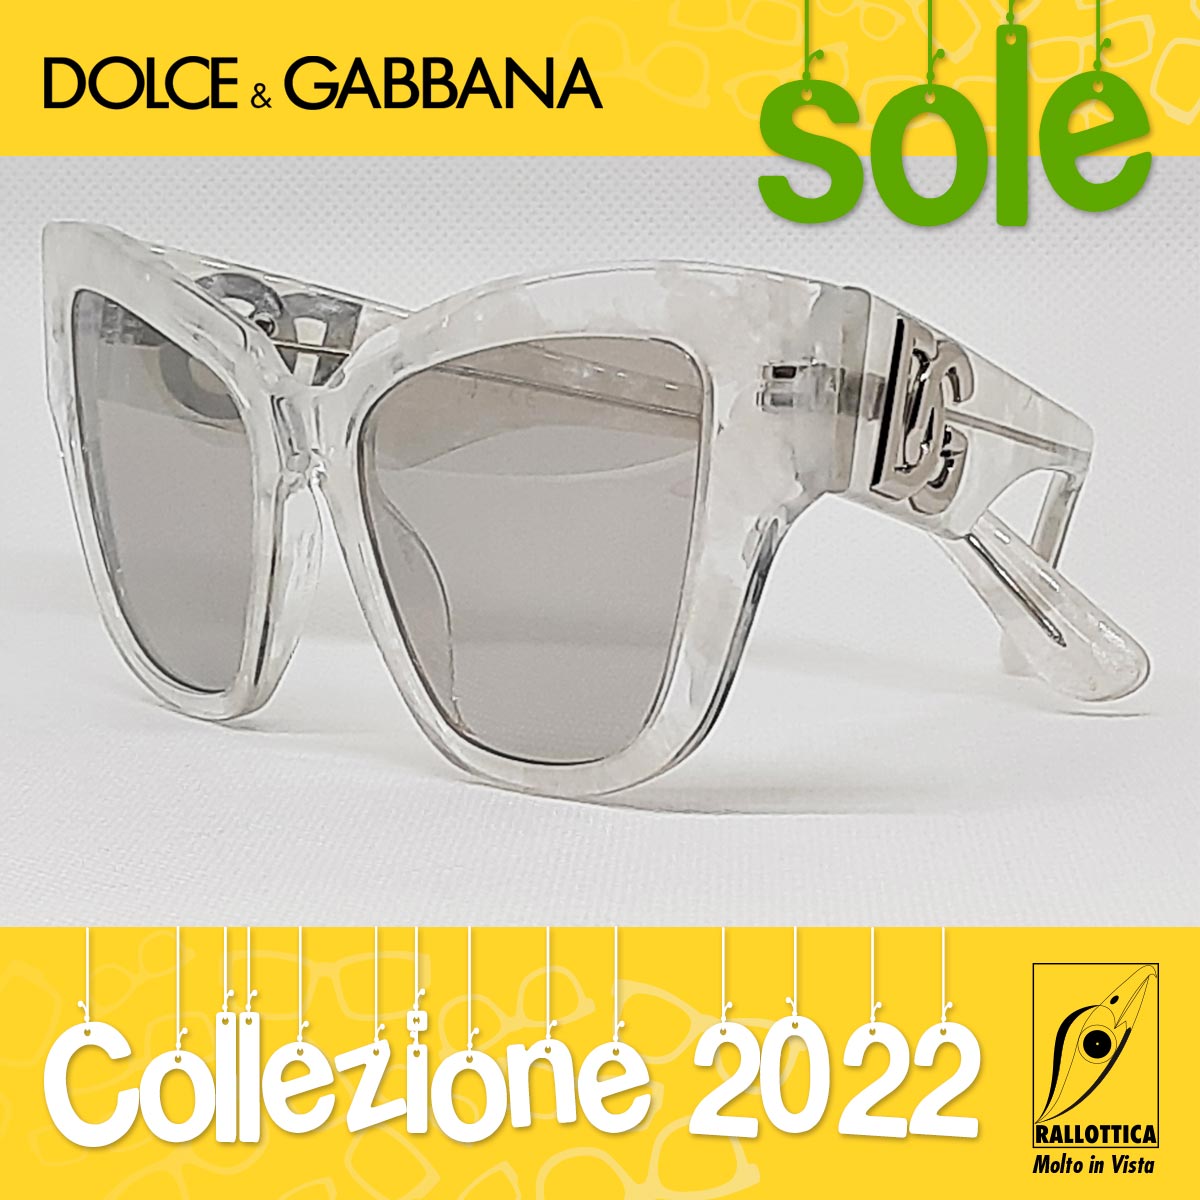 Dolce&Gabbana Sole